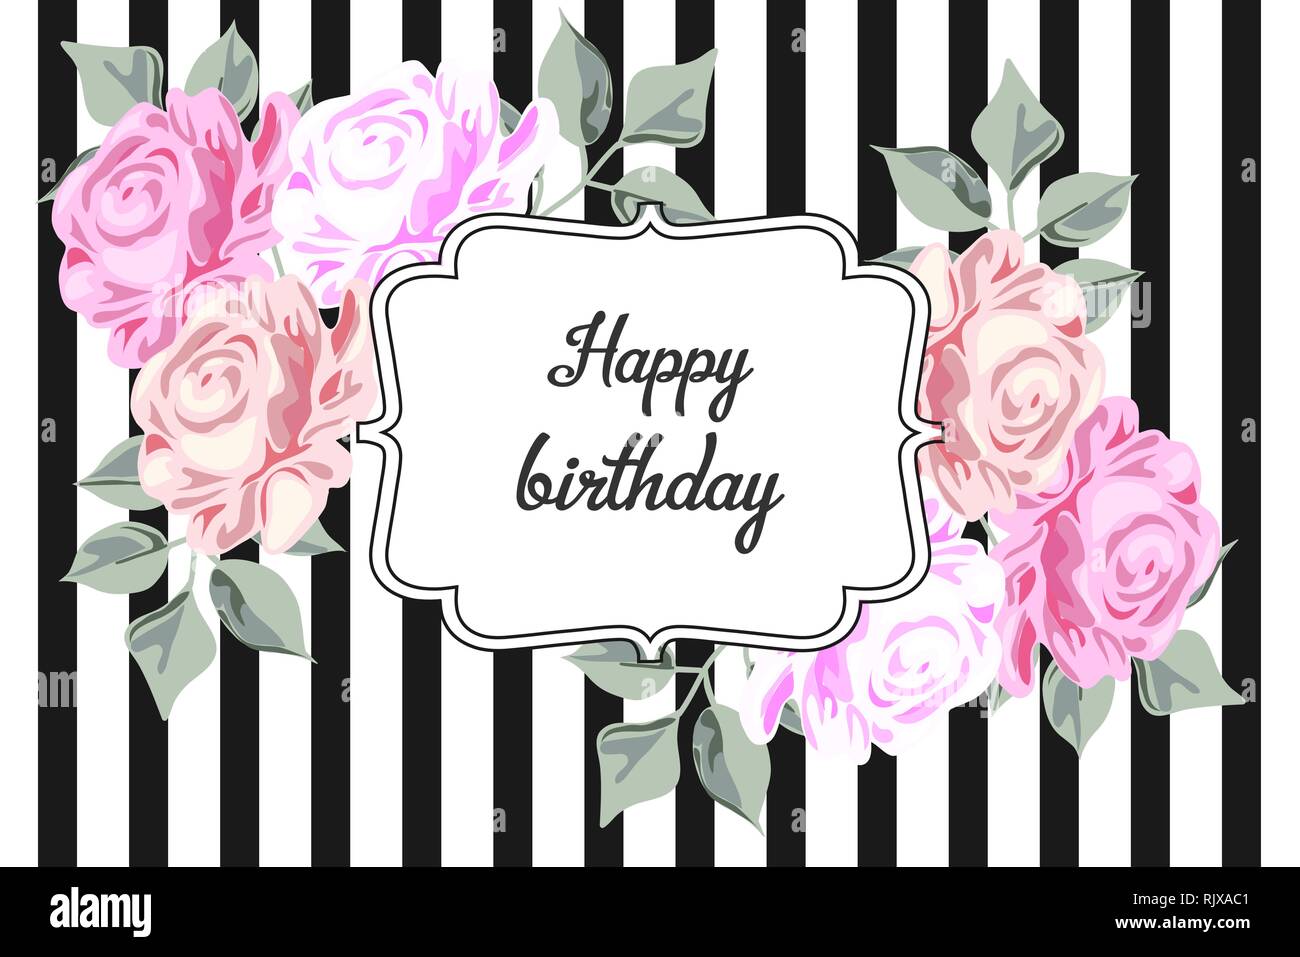 Buon compleanno. Modello in bianco e nero con strisce rosa disegno a mano di rose. Illustrazione vintage Illustrazione Vettoriale